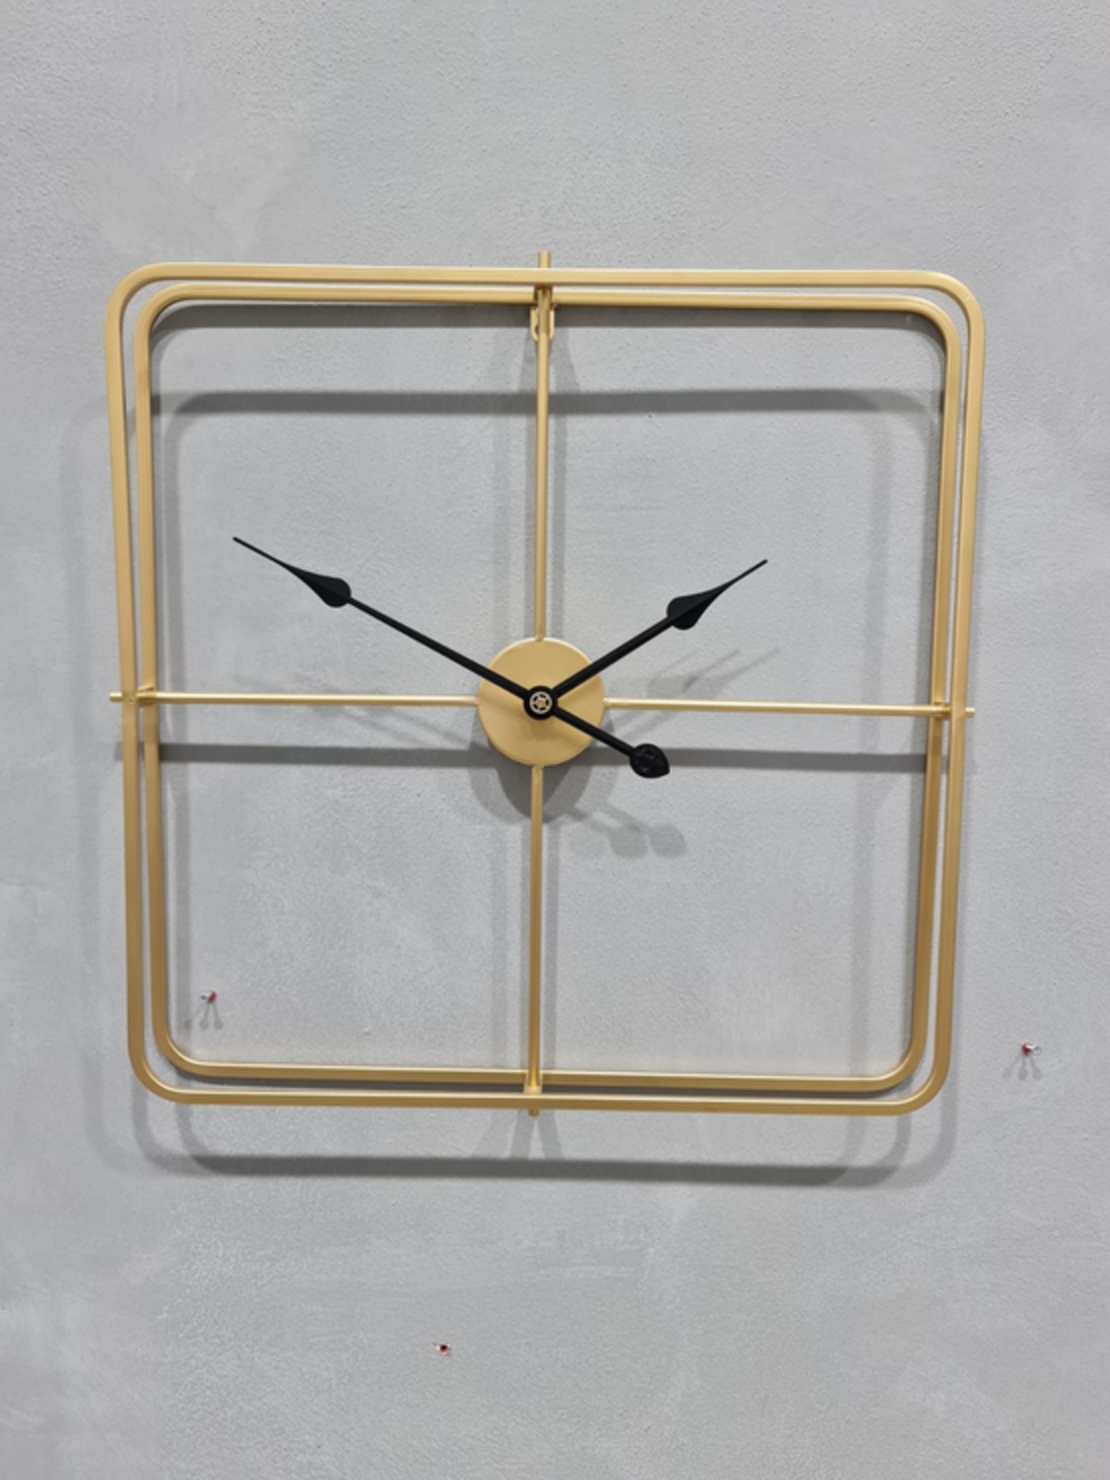 שעון - מרובע זהב - קוטר 60